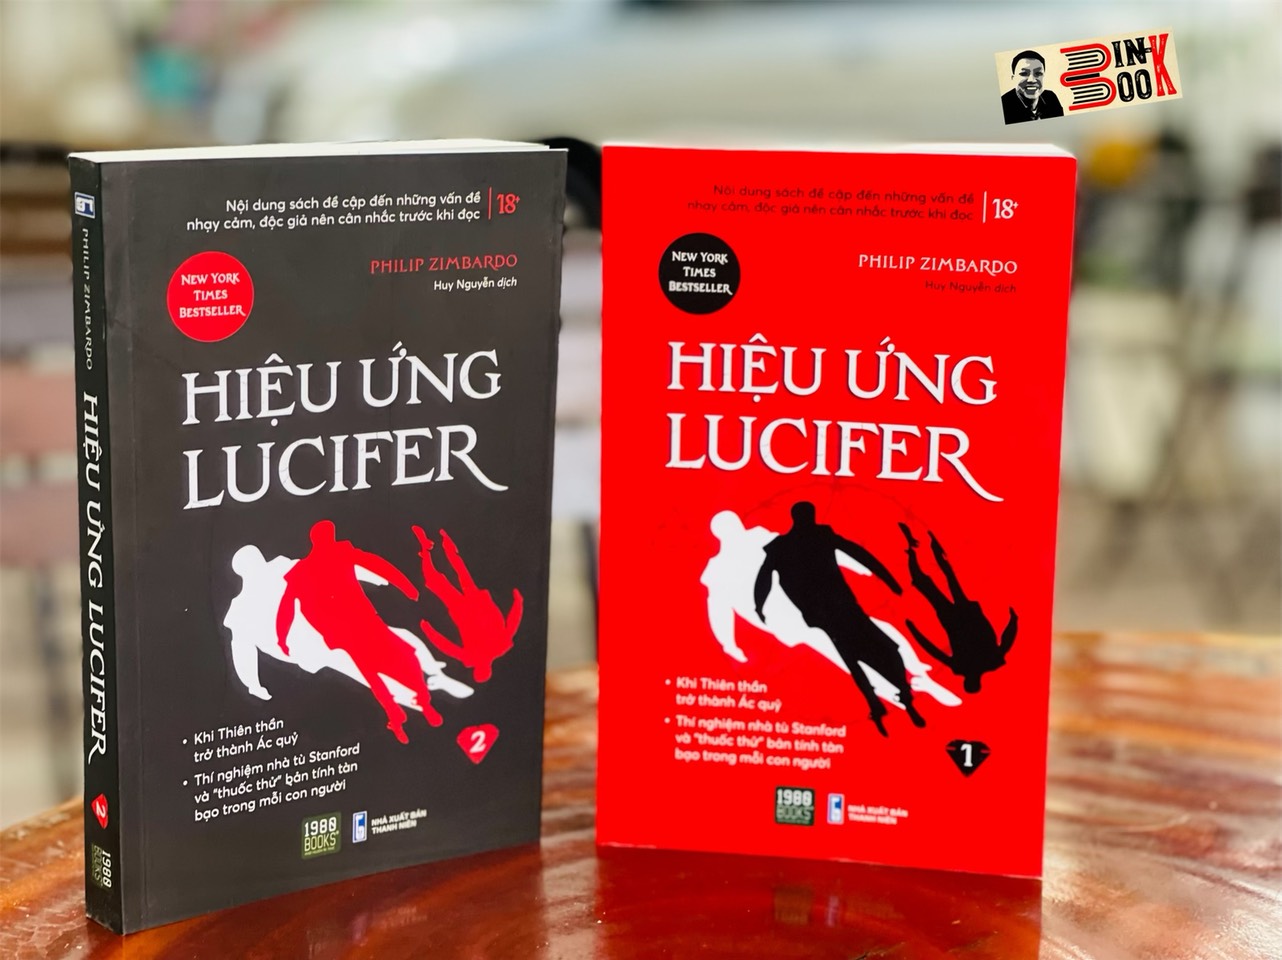 (Bộ 2 Tập) (New York Times Best Seller) HIỆU ỨNG LUCIFER - Philip Zimbardo – Huy Nguyễn dịch – 1980 Books - Nxb Thanh Niên (Bìa mềm)